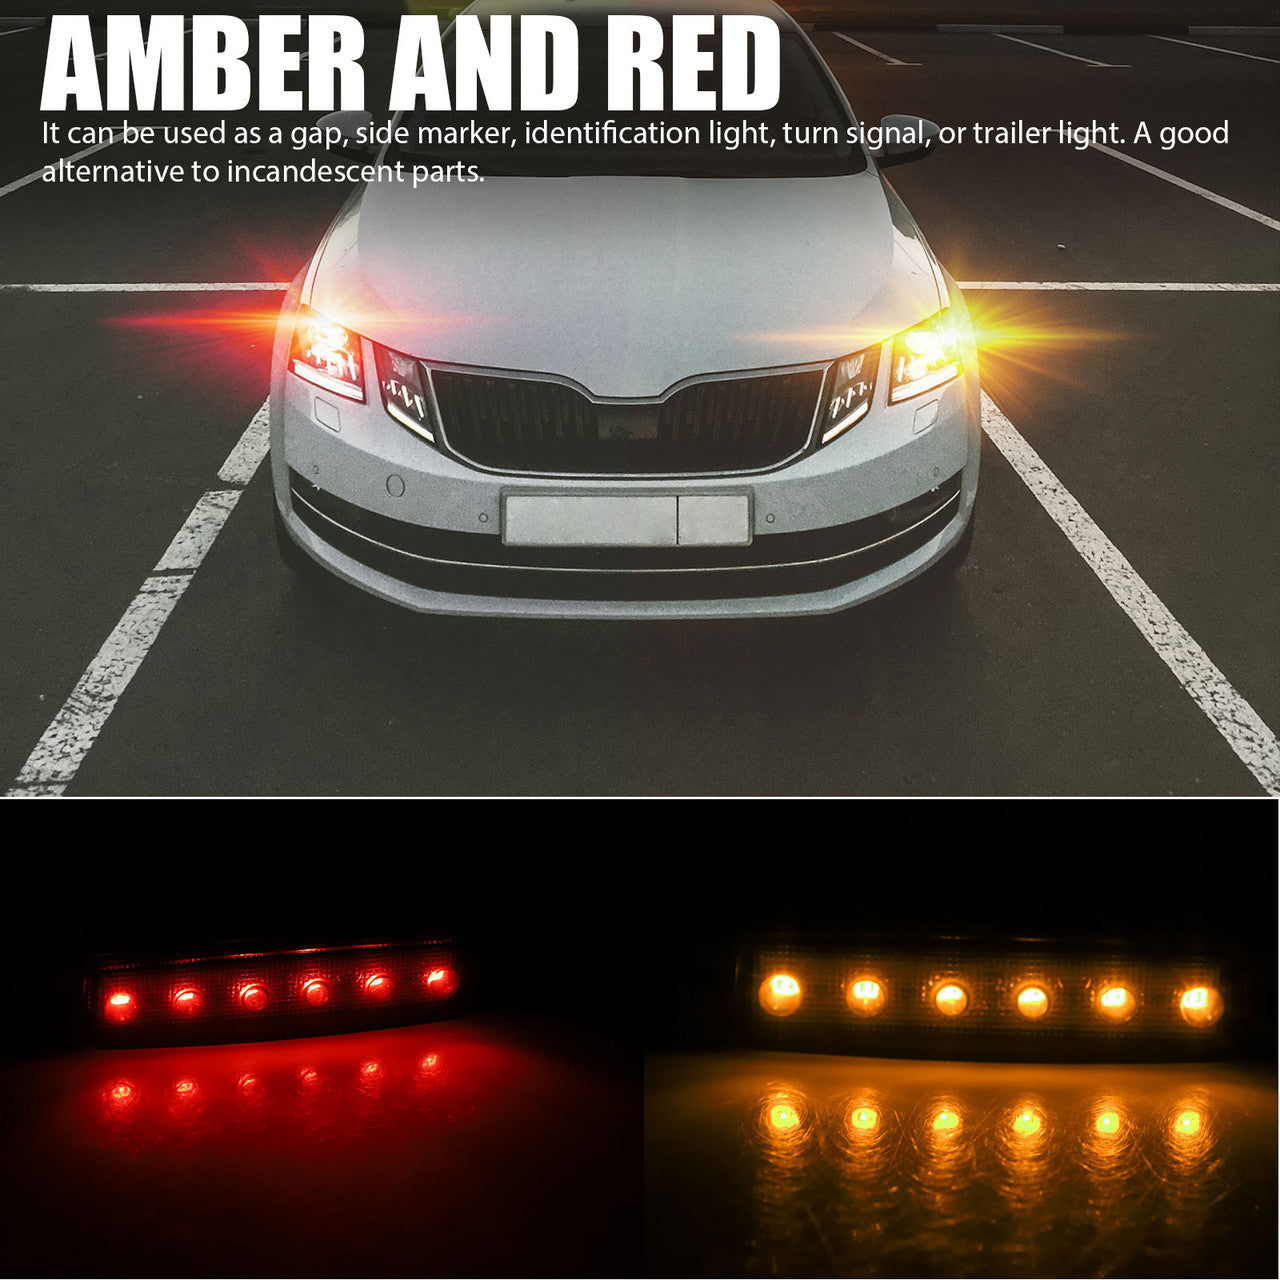 10Pcs LED Indicator Marker Lights, 6 SMD LED Neon Underglow Lights Pod for Off-road, Truck, Jeep, UTV, ATV, SUV, Waterrpoof LED Rock Lights for Gap, Side Marker Lights, Universal, Amber & Red, 12V